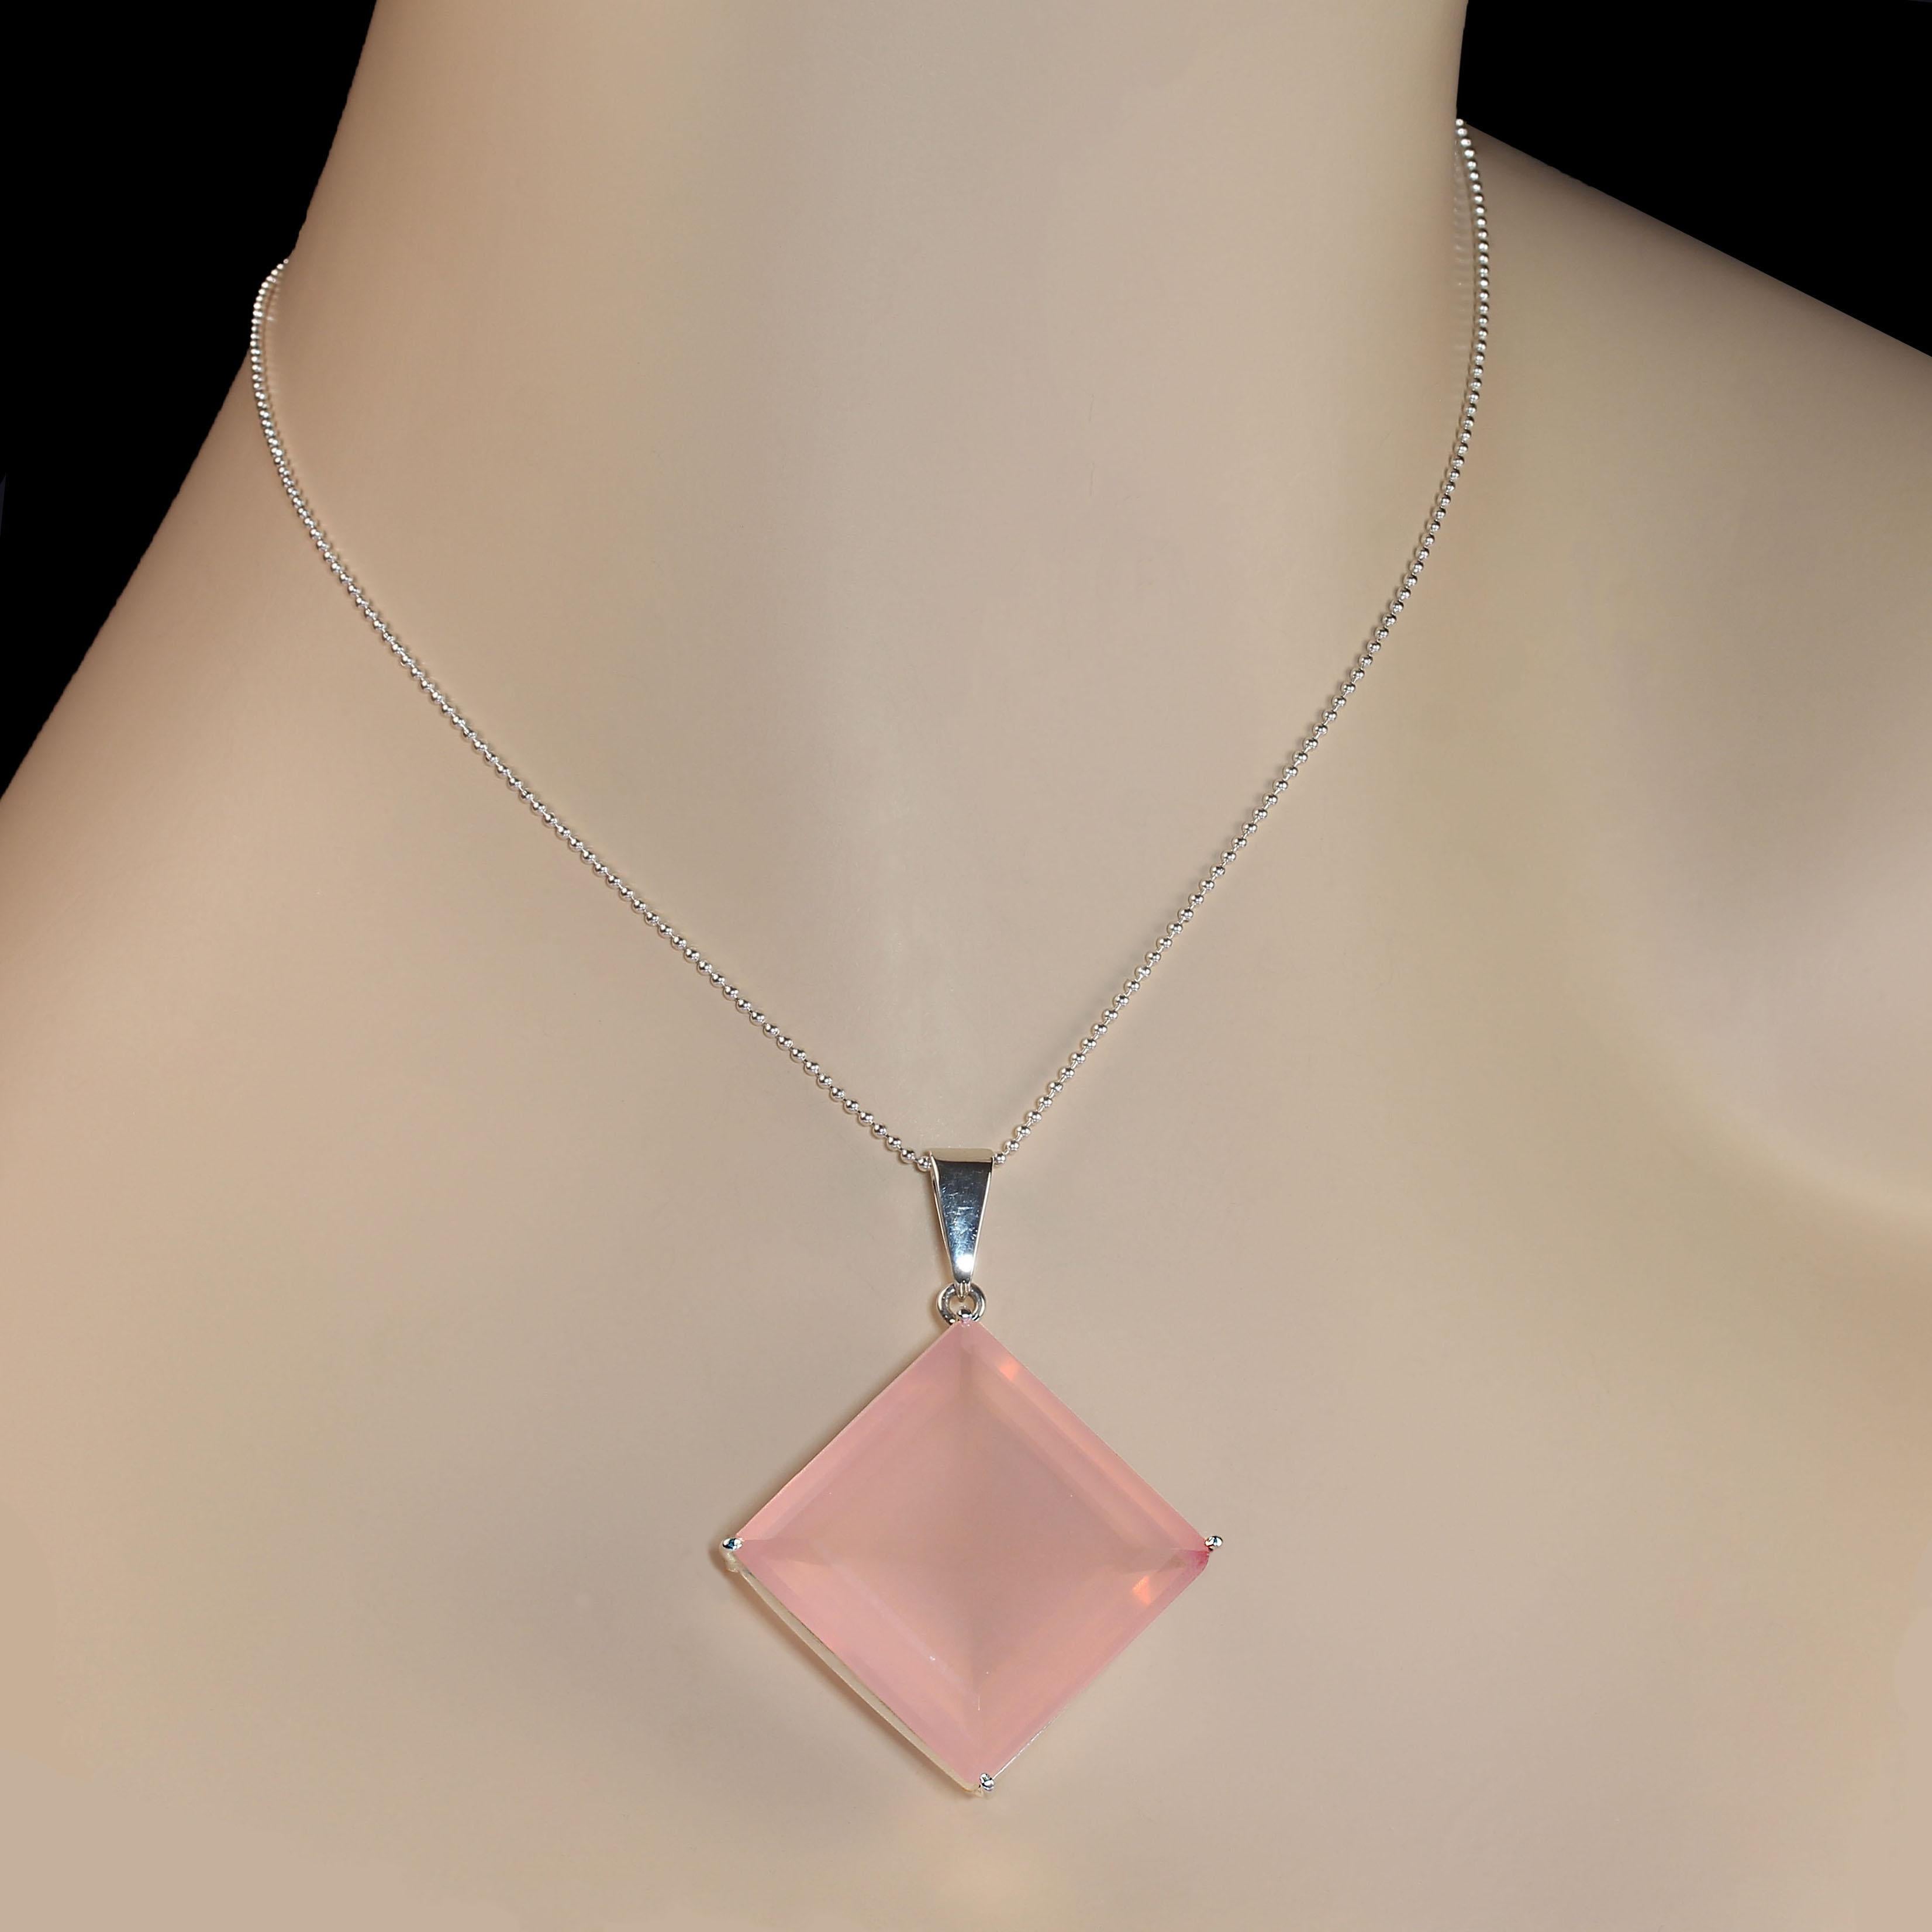 Plus d'un pouce carré  Le pendentif en argent sterling et quartz rose est vraiment magnifique.  La pierre précieuse, d'une valeur de 69 carats, est sertie dans une monture en argent sterling fabriquée à la main. Ce pendentif unique en quartz rose